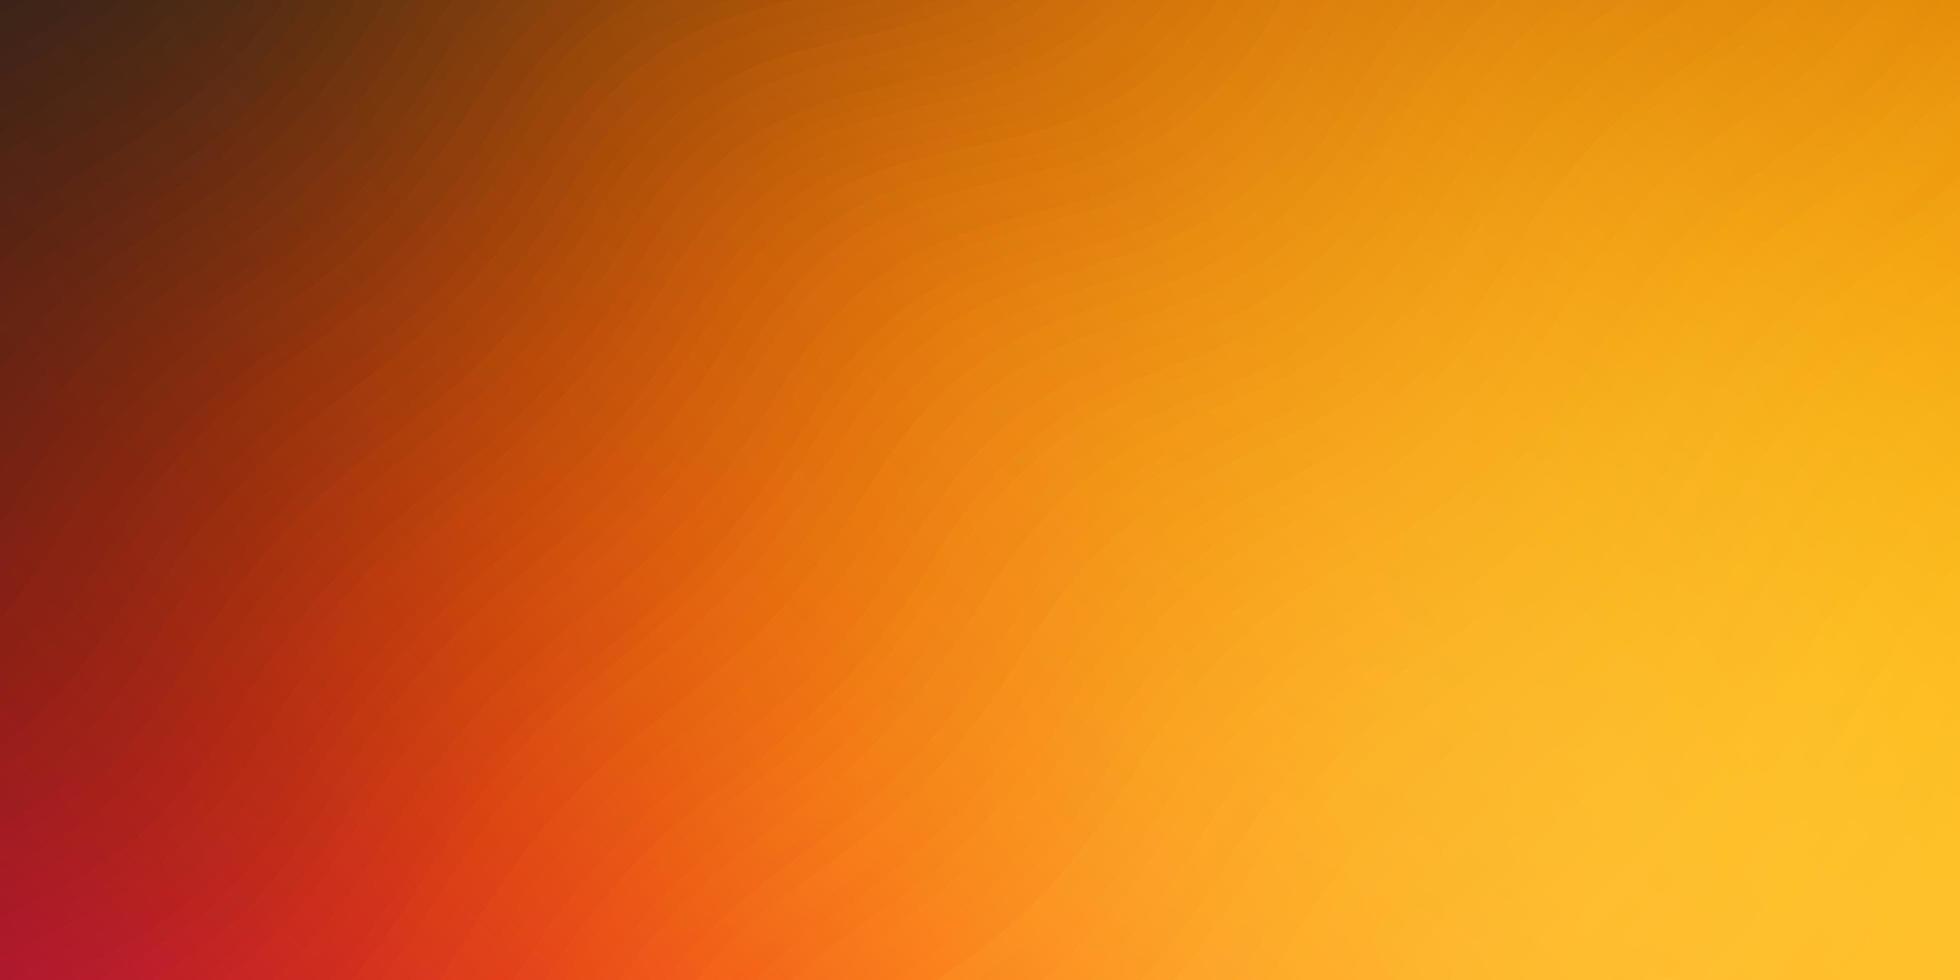 sfondo vettoriale arancione chiaro con linee. illustrazione in stile astratto con gradiente curvo. modello per opuscoli aziendali, volantini